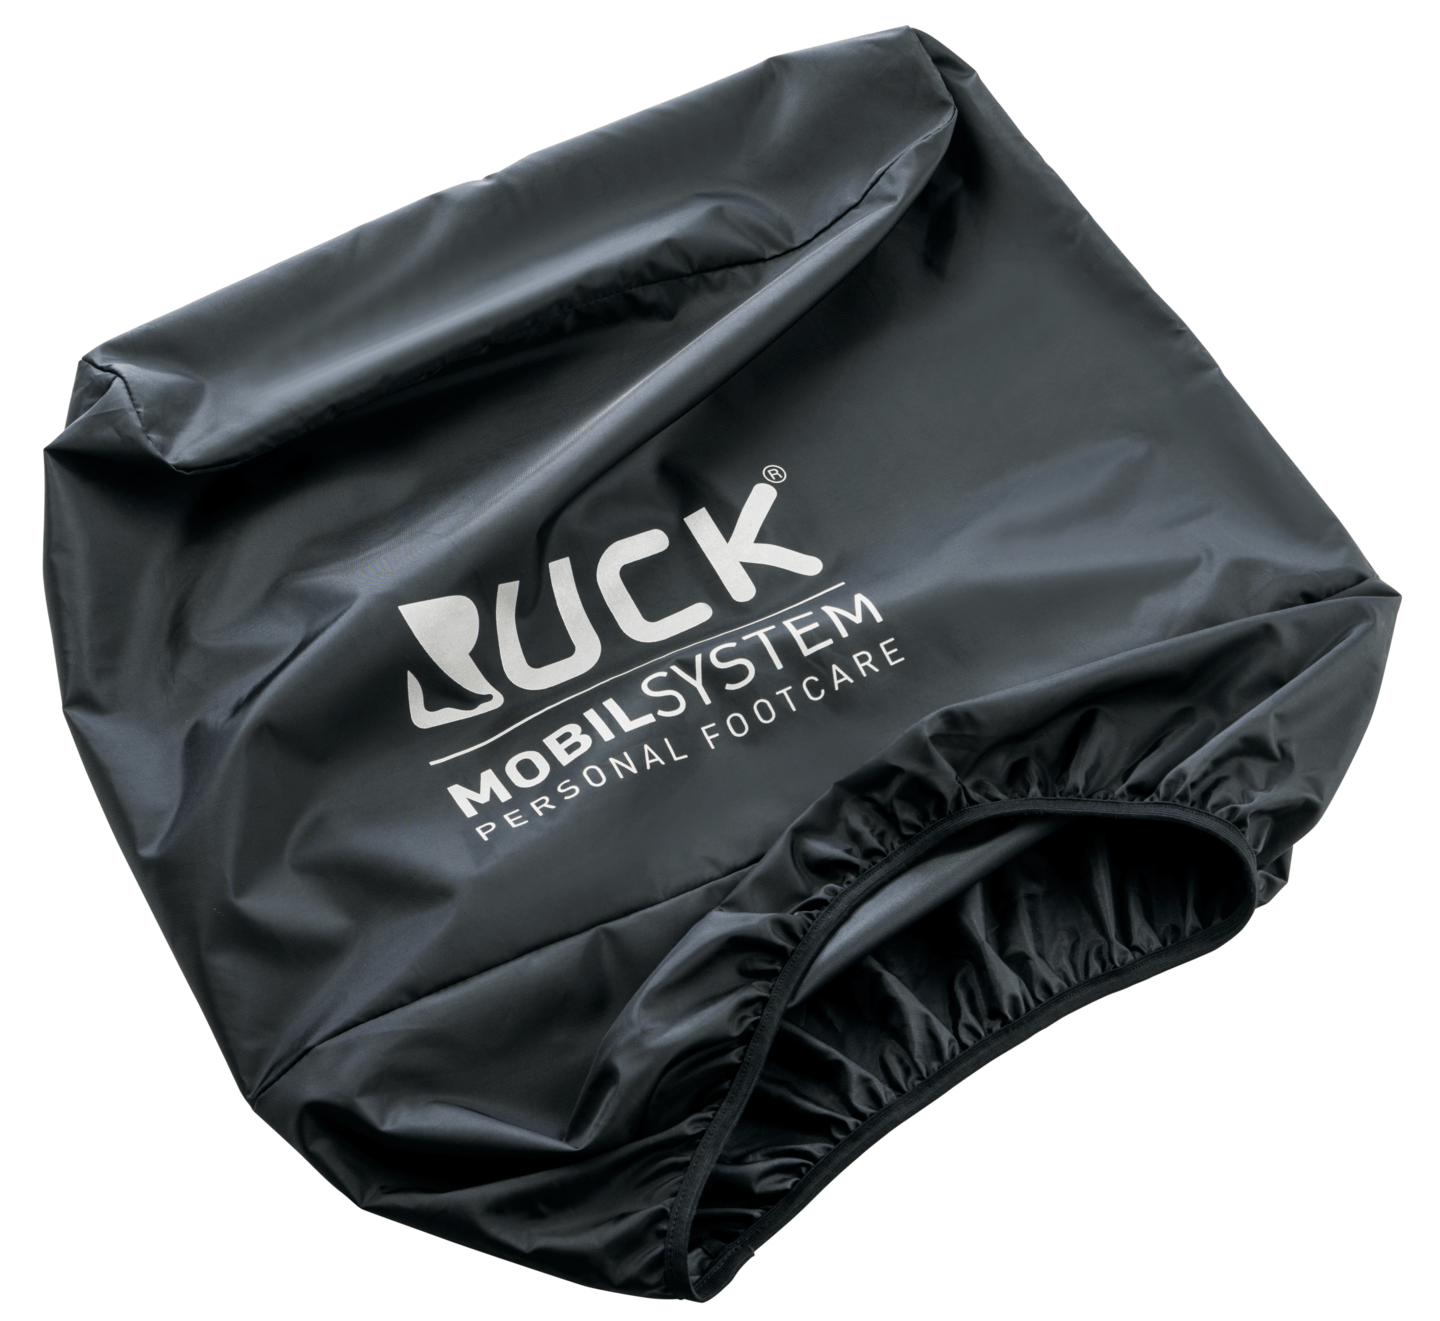 RUCK MOBIL SYSTEM - Regenhülle in schwarz